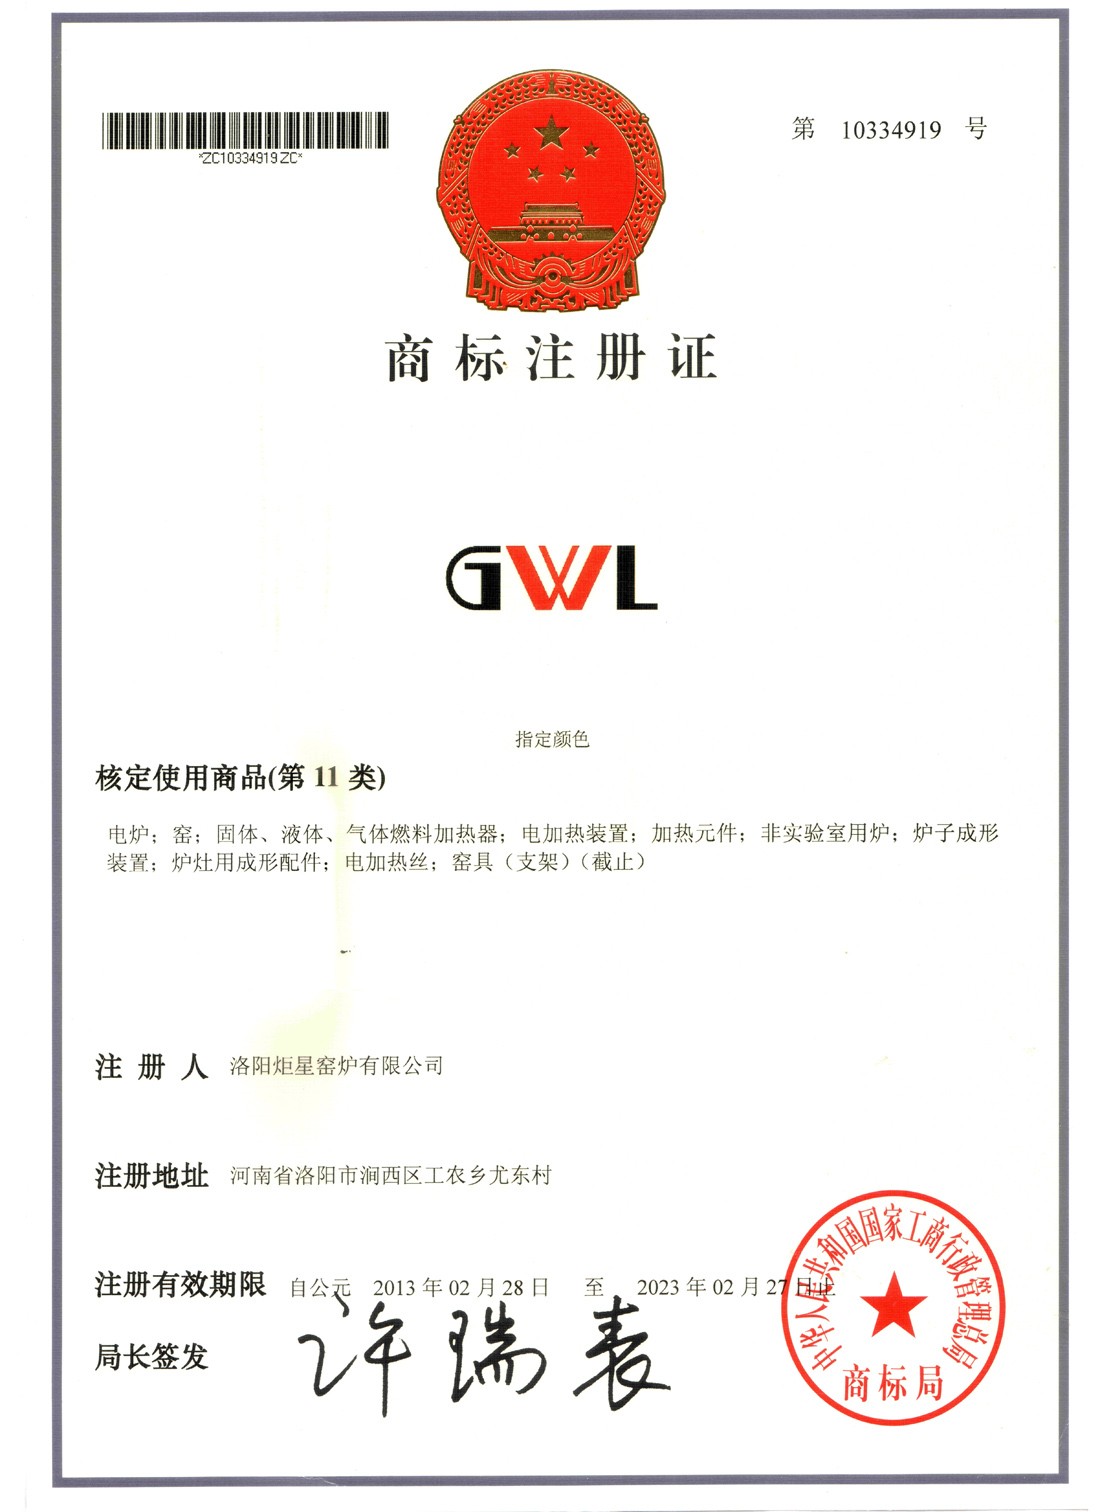 GWL商标认证